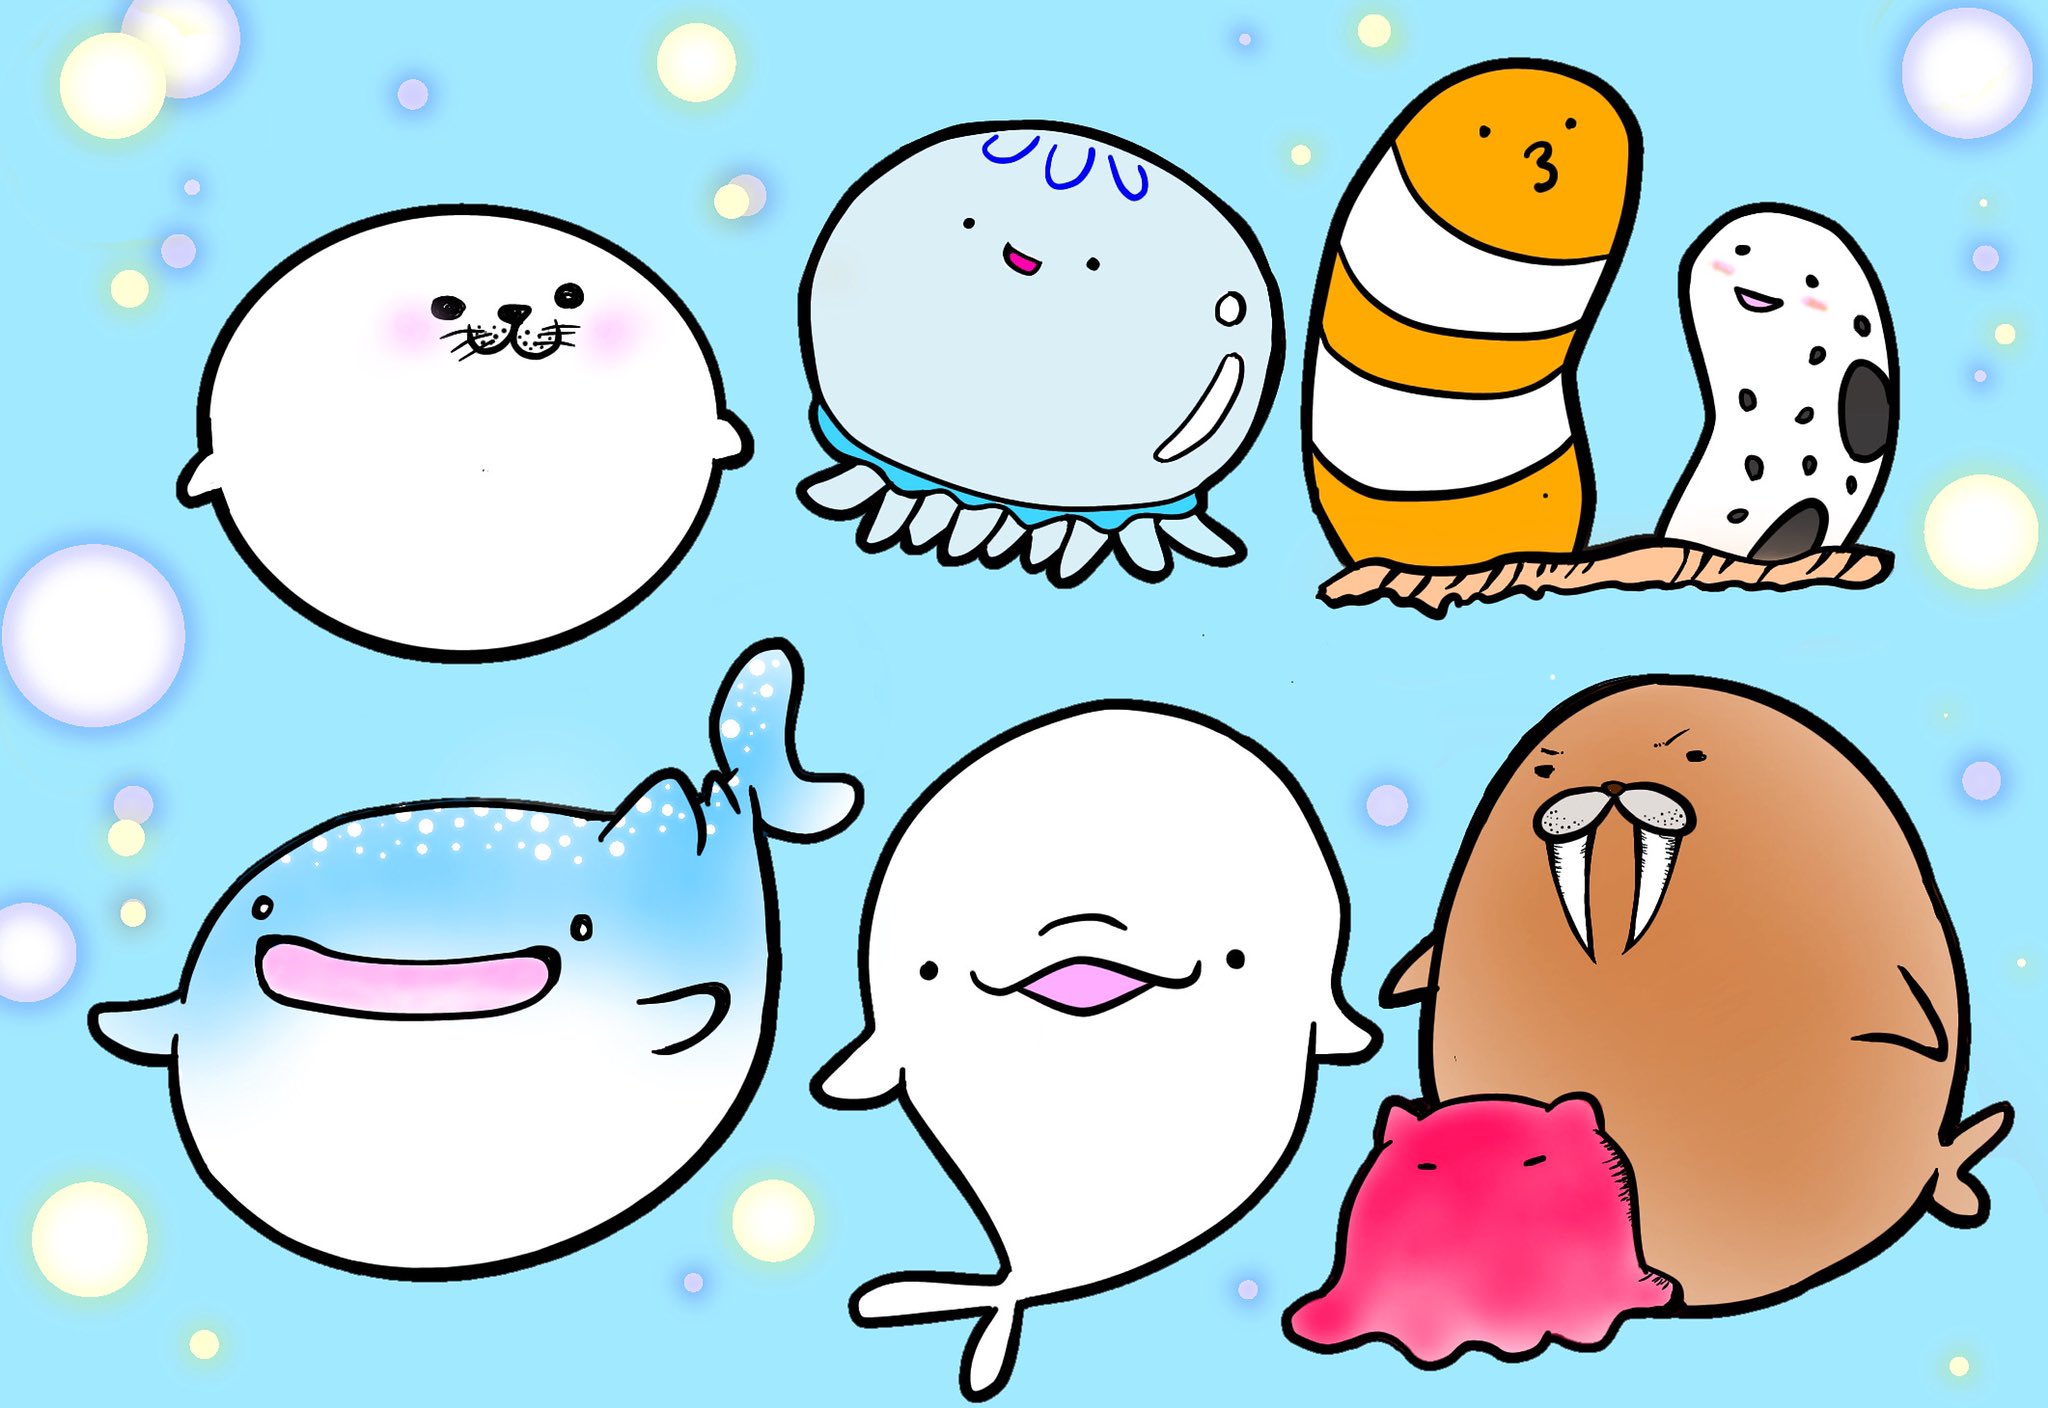 Kuji Kuji Ra まるッと海のなかまたち 自分が癒されたくて 描いてしまいました 丸い形は癒されます イラスト いらすと オリジナルキャラクター ゆるキャラ ゆるいイラスト 癒し 動物 海の生き物 T Co Rs3kiixdou Twitter